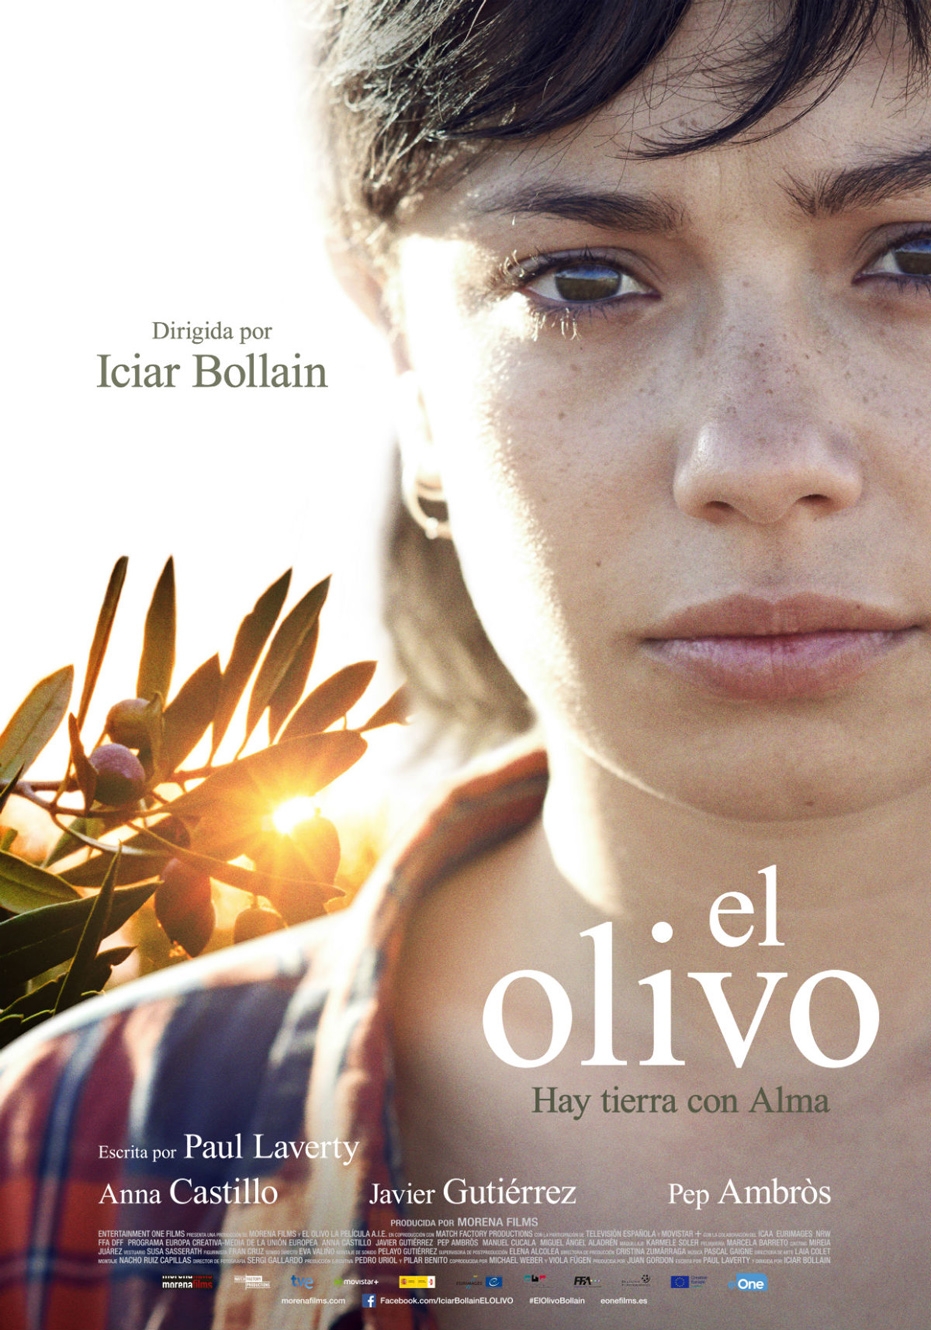 Ciclo de Cine Español: proyección de 'El olivo', de Icíar Bollaín